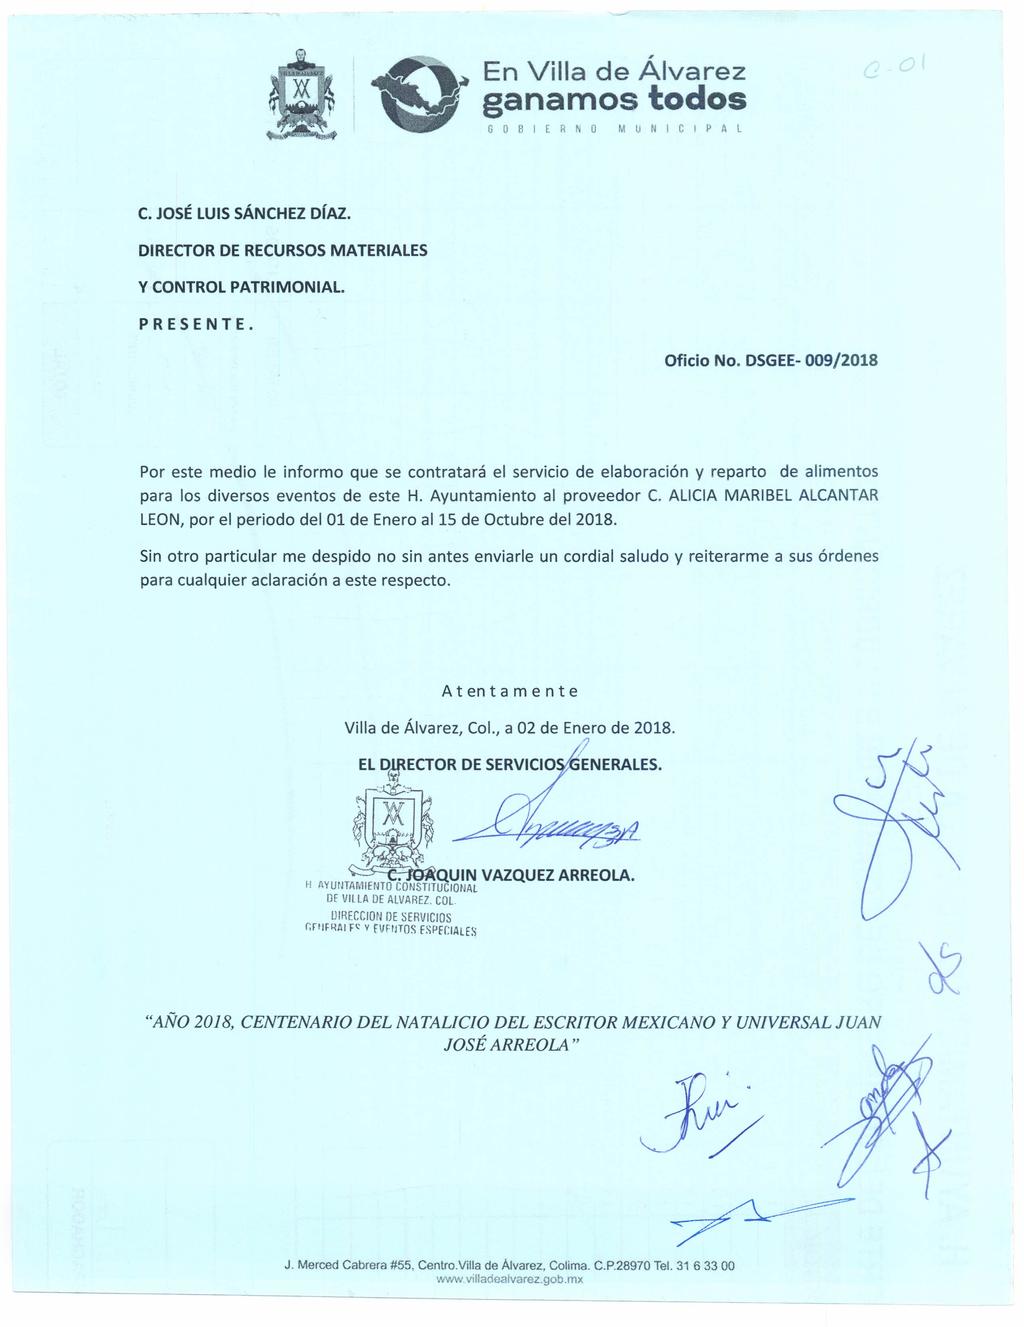 , En Villa de Alvarez ganamos todos GOBIERNO MUNICIPAL C. JOSÉLUIS SÁNCHEZ DíAZ. DIRECTOR DE RECURSOSMATERIALES y CONTROL PATRIMONIAL. PRESENTE. Oficio No.